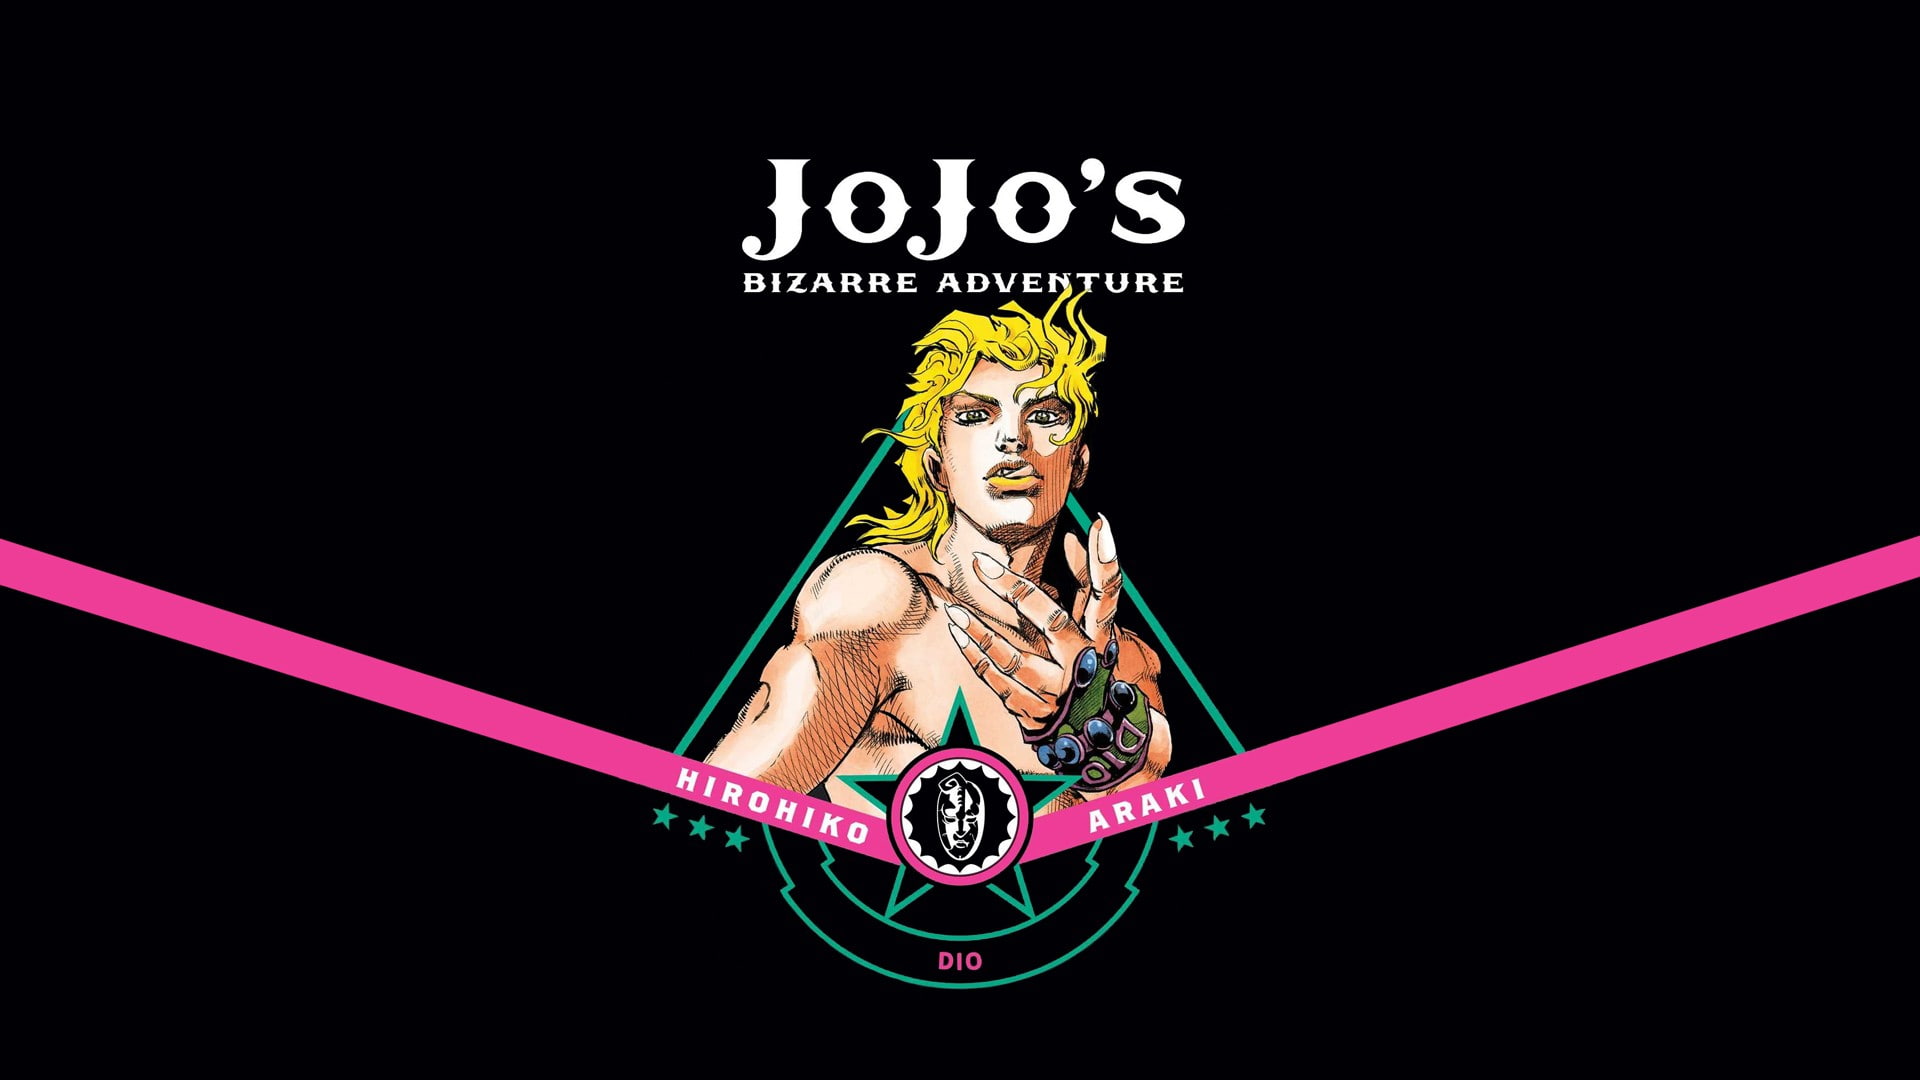 Jojo Bizarre Adventure Dio Wallpapers - Top Free Jojo Bizarre Adventure ...